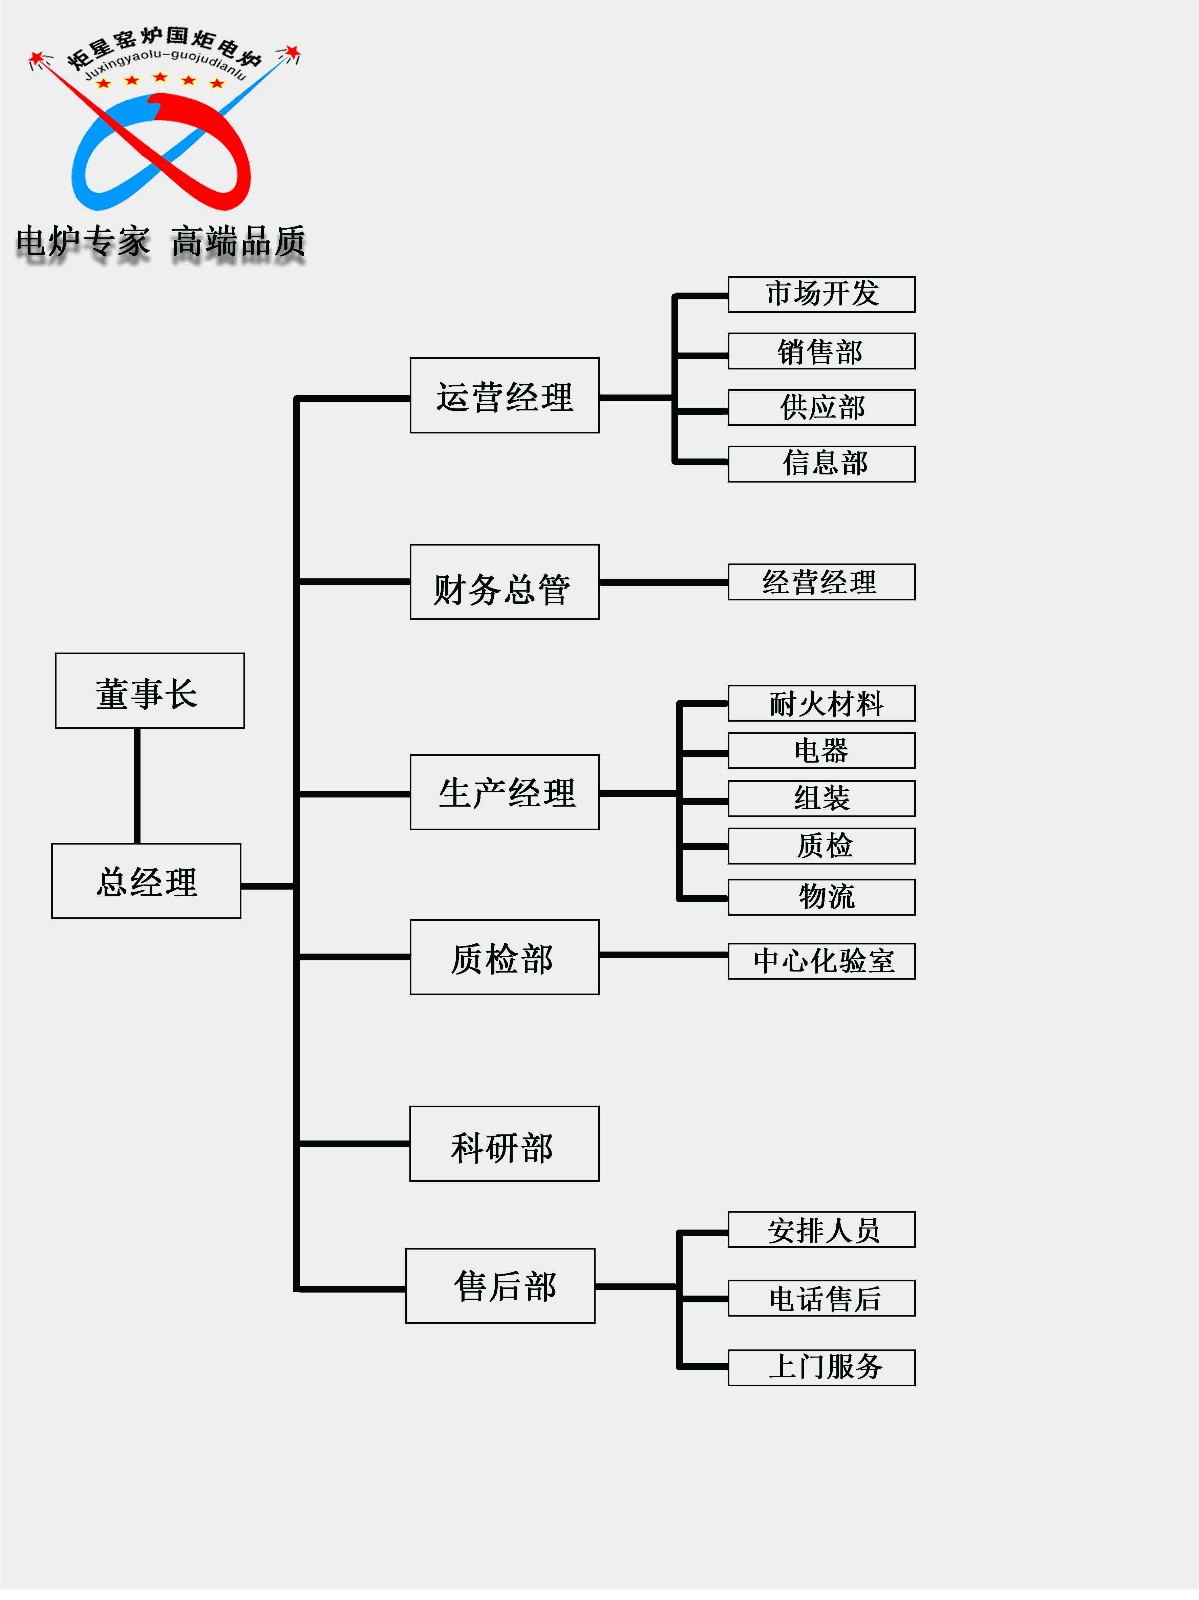 组织架构（中文）.jpg